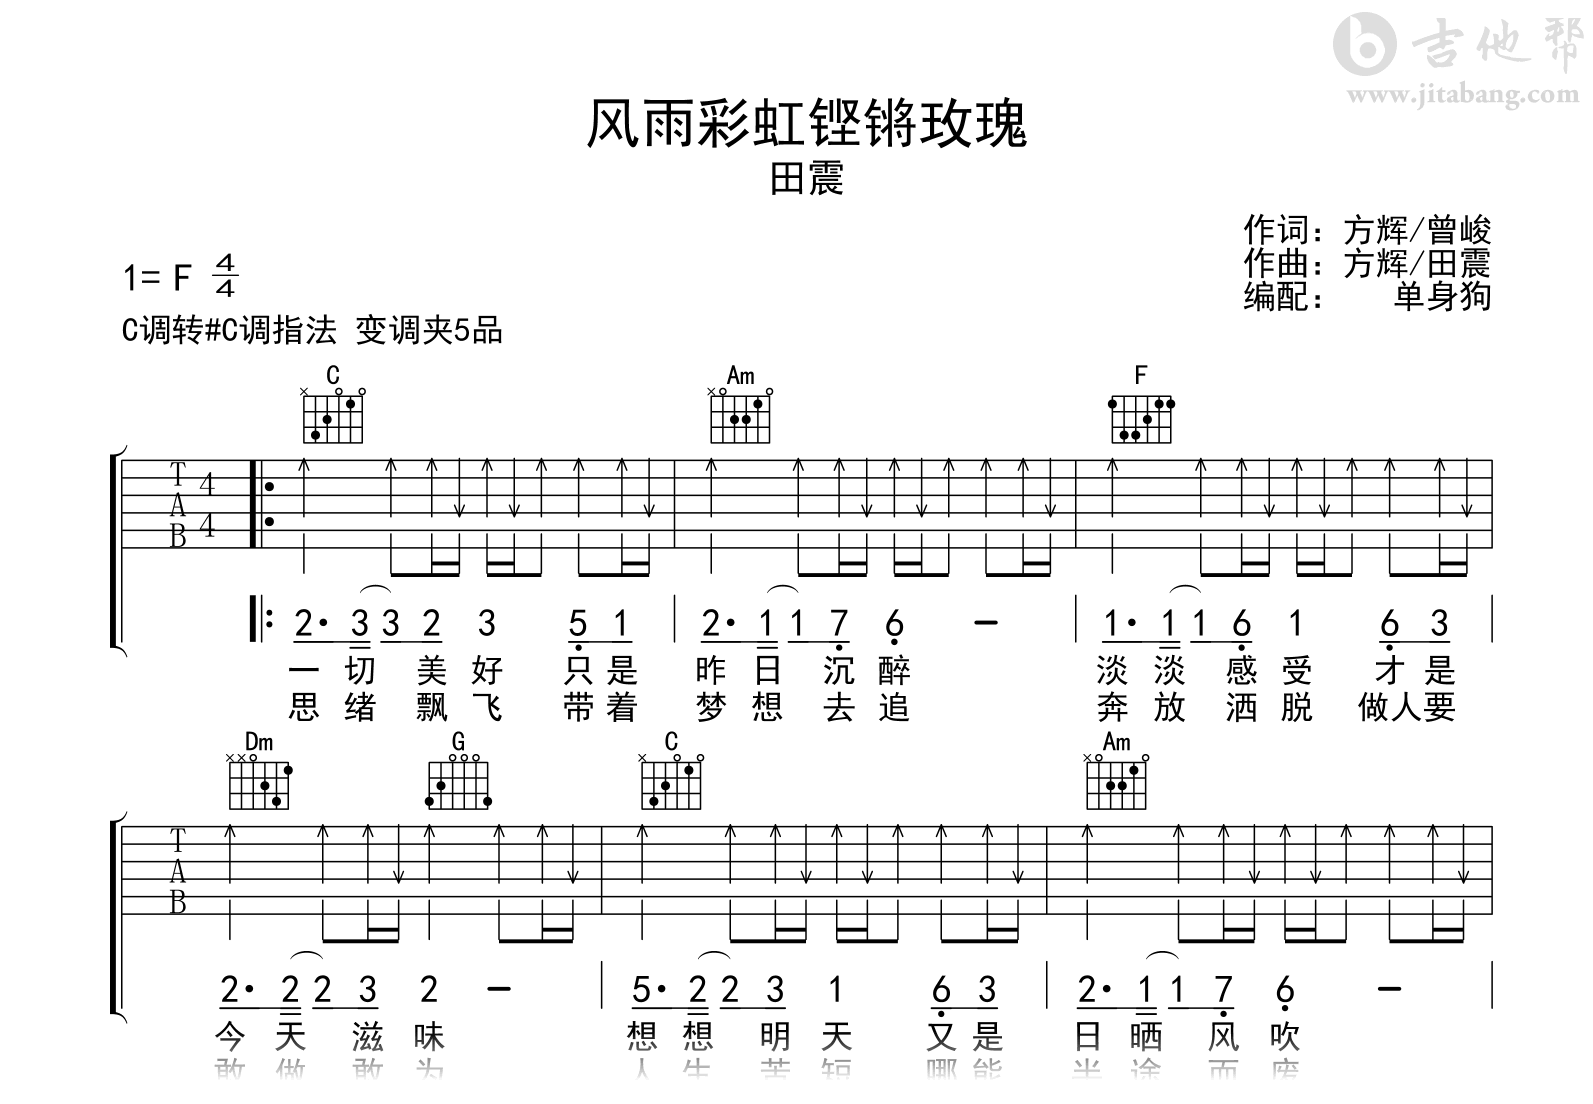 风雨彩虹铿锵玫瑰吉他谱-田震-吉他帮